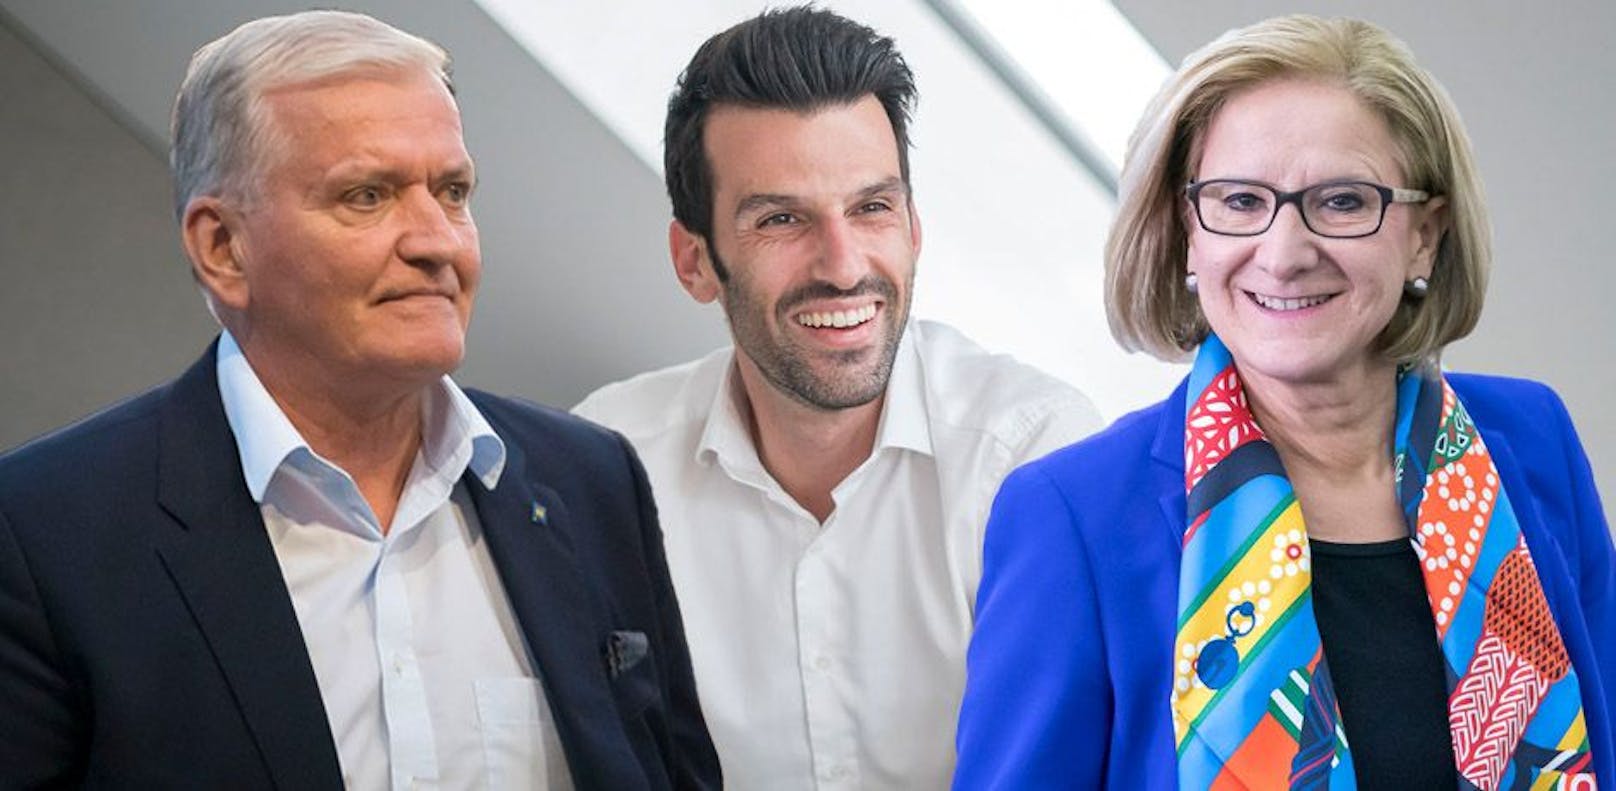 Franz Schnabl (SPÖ), Udo Landbauer (FPÖ) und Johanna Mikl-Leitner (ÖVP)